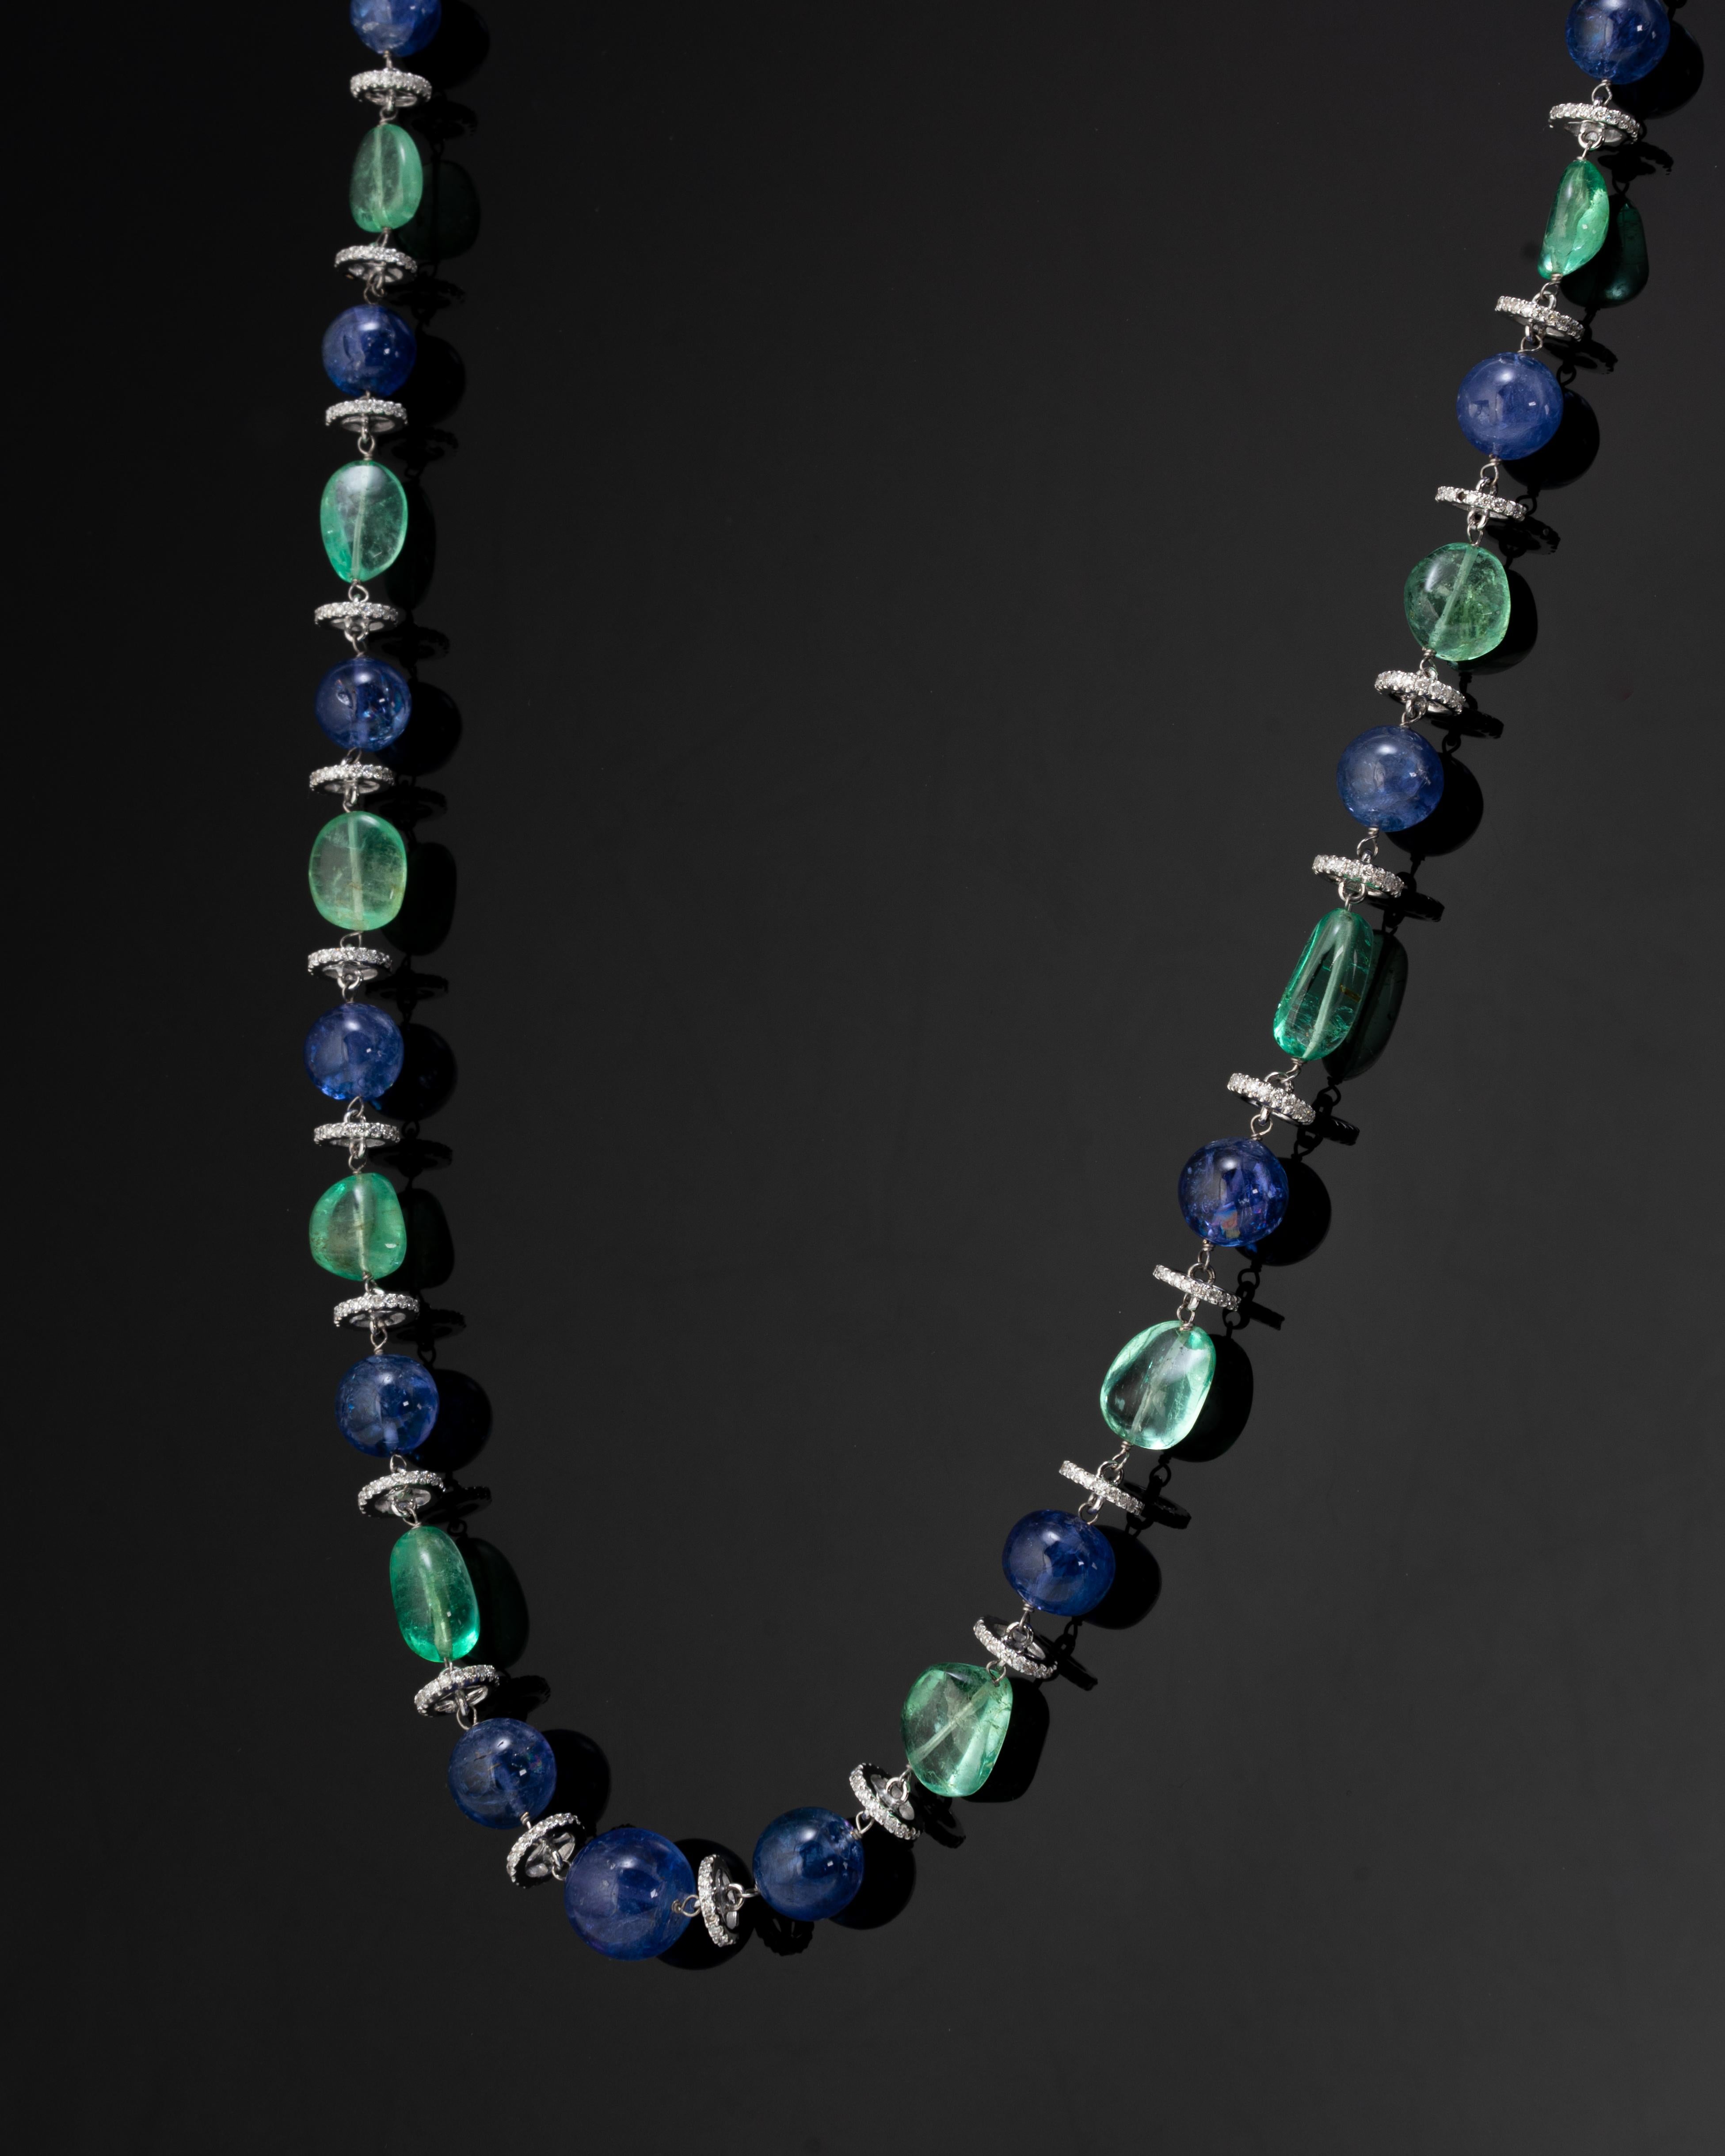 Eine atemberaubende Art-Deco-Perlenkette, die kolumbianische Tumble-Perlen und Tansanit-Perlen mit Diamanten kombiniert. Die Halskette ist ca. 32 cm lang. Bitte zögern Sie nicht, uns eine Nachricht zukommen zu lassen, wenn Sie Fragen haben. 
Der